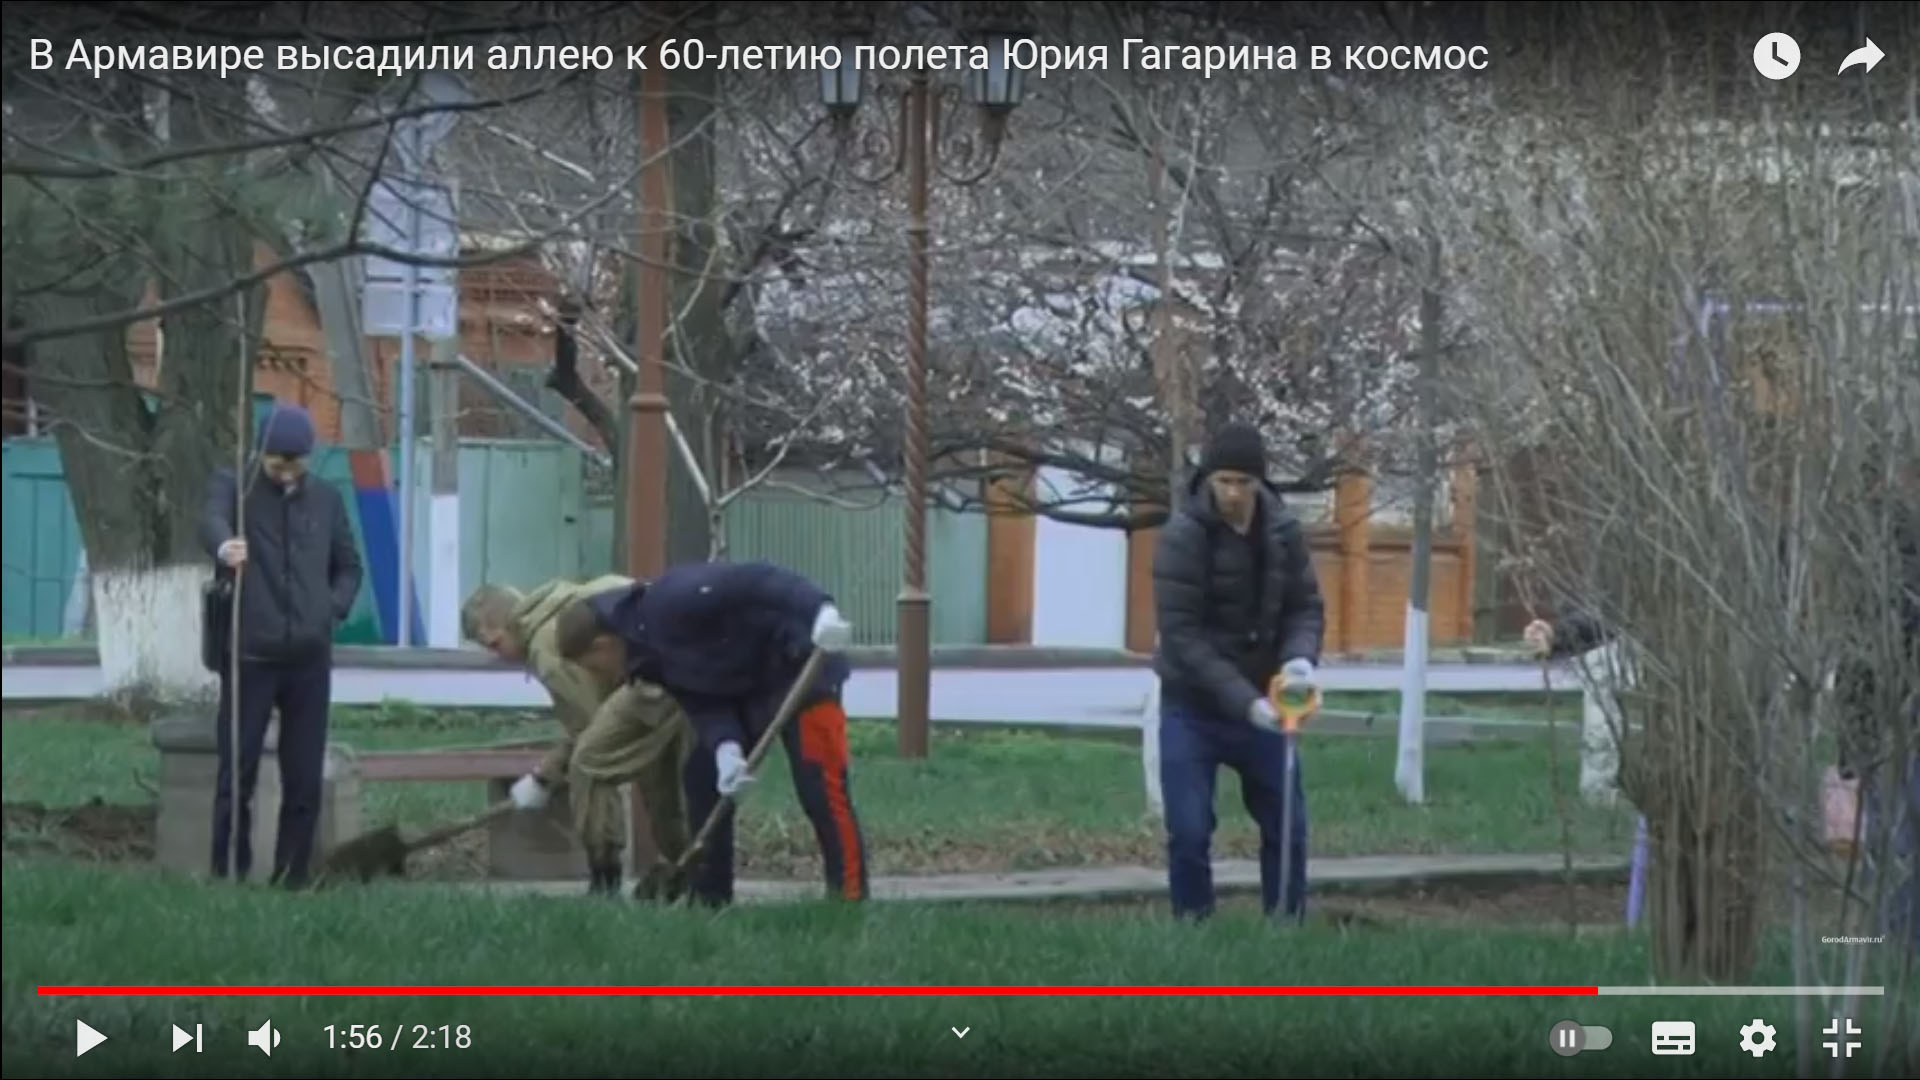 студенты АМТТ сажают алею в честь 60 лет подвига Гагарина